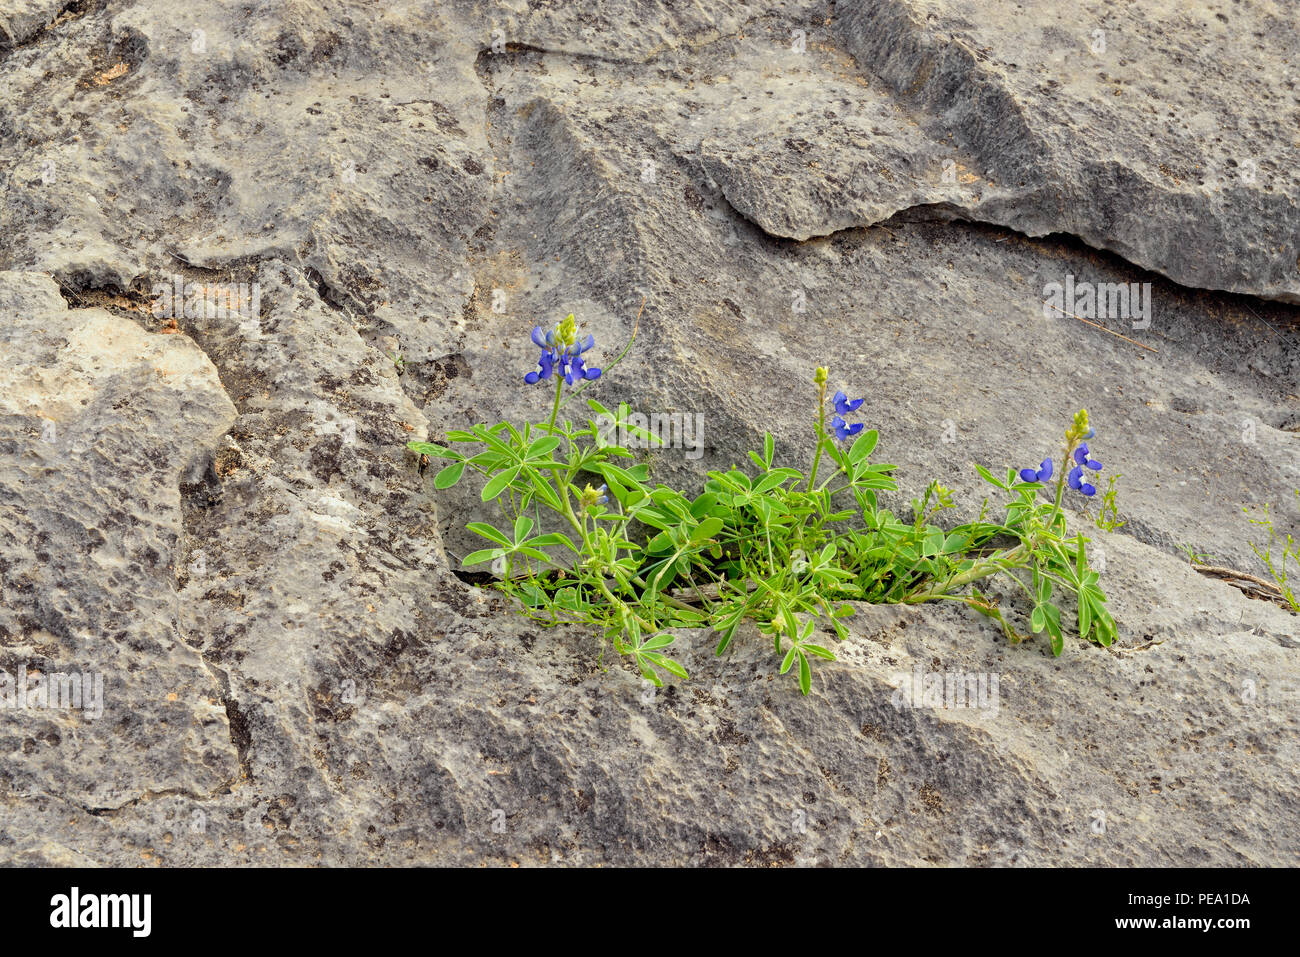 Texas bluebonnet (Lupinus subcarnosus) creciente de afloramiento rocoso Foto de stock